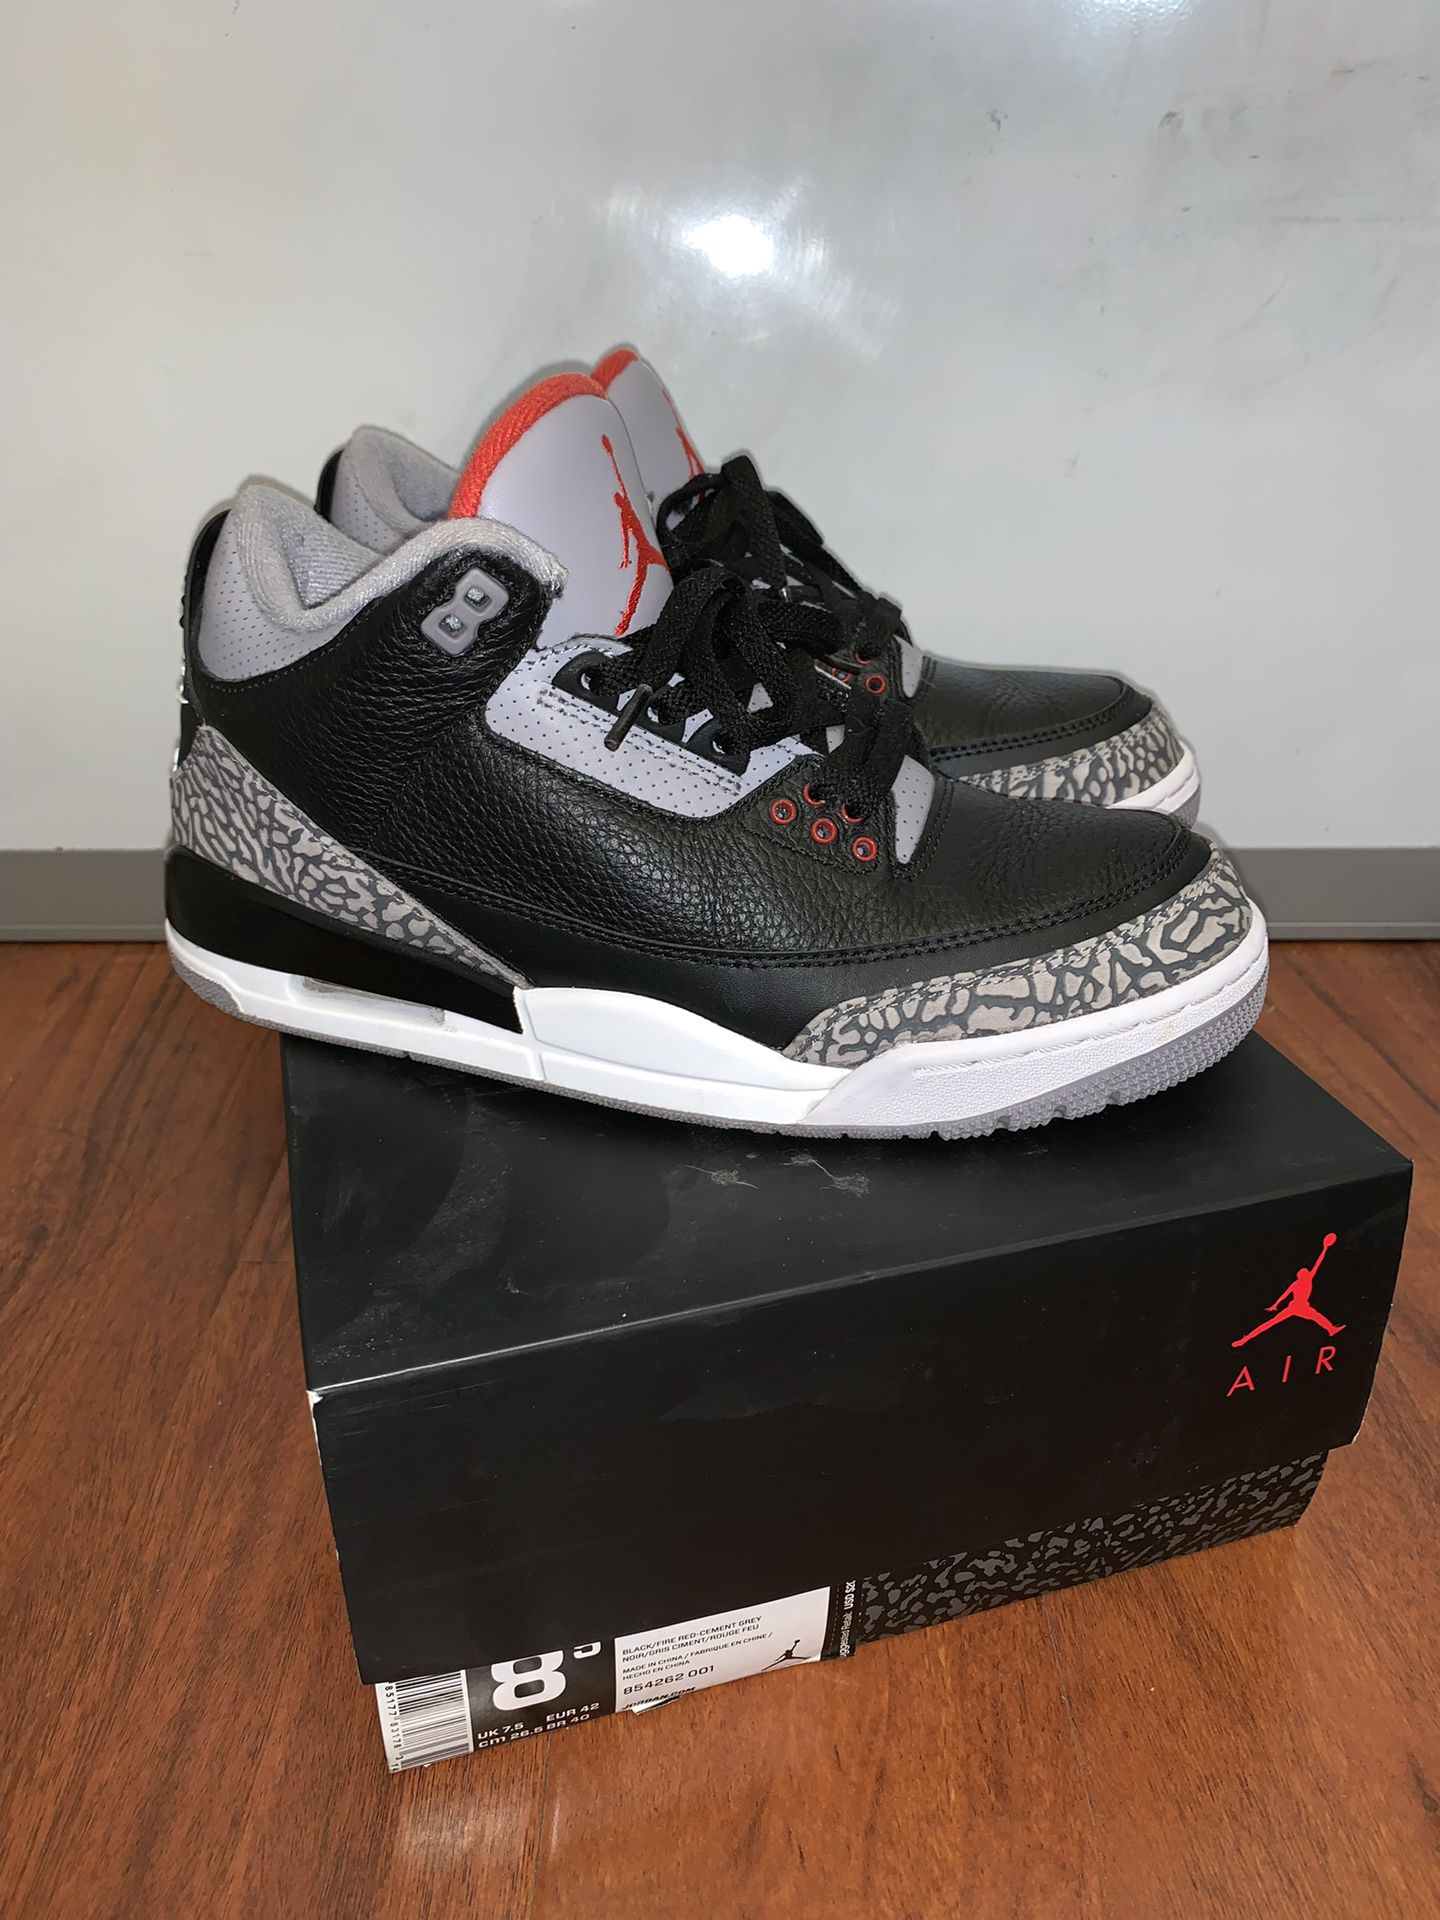 Air Jordan Black Cement 3s